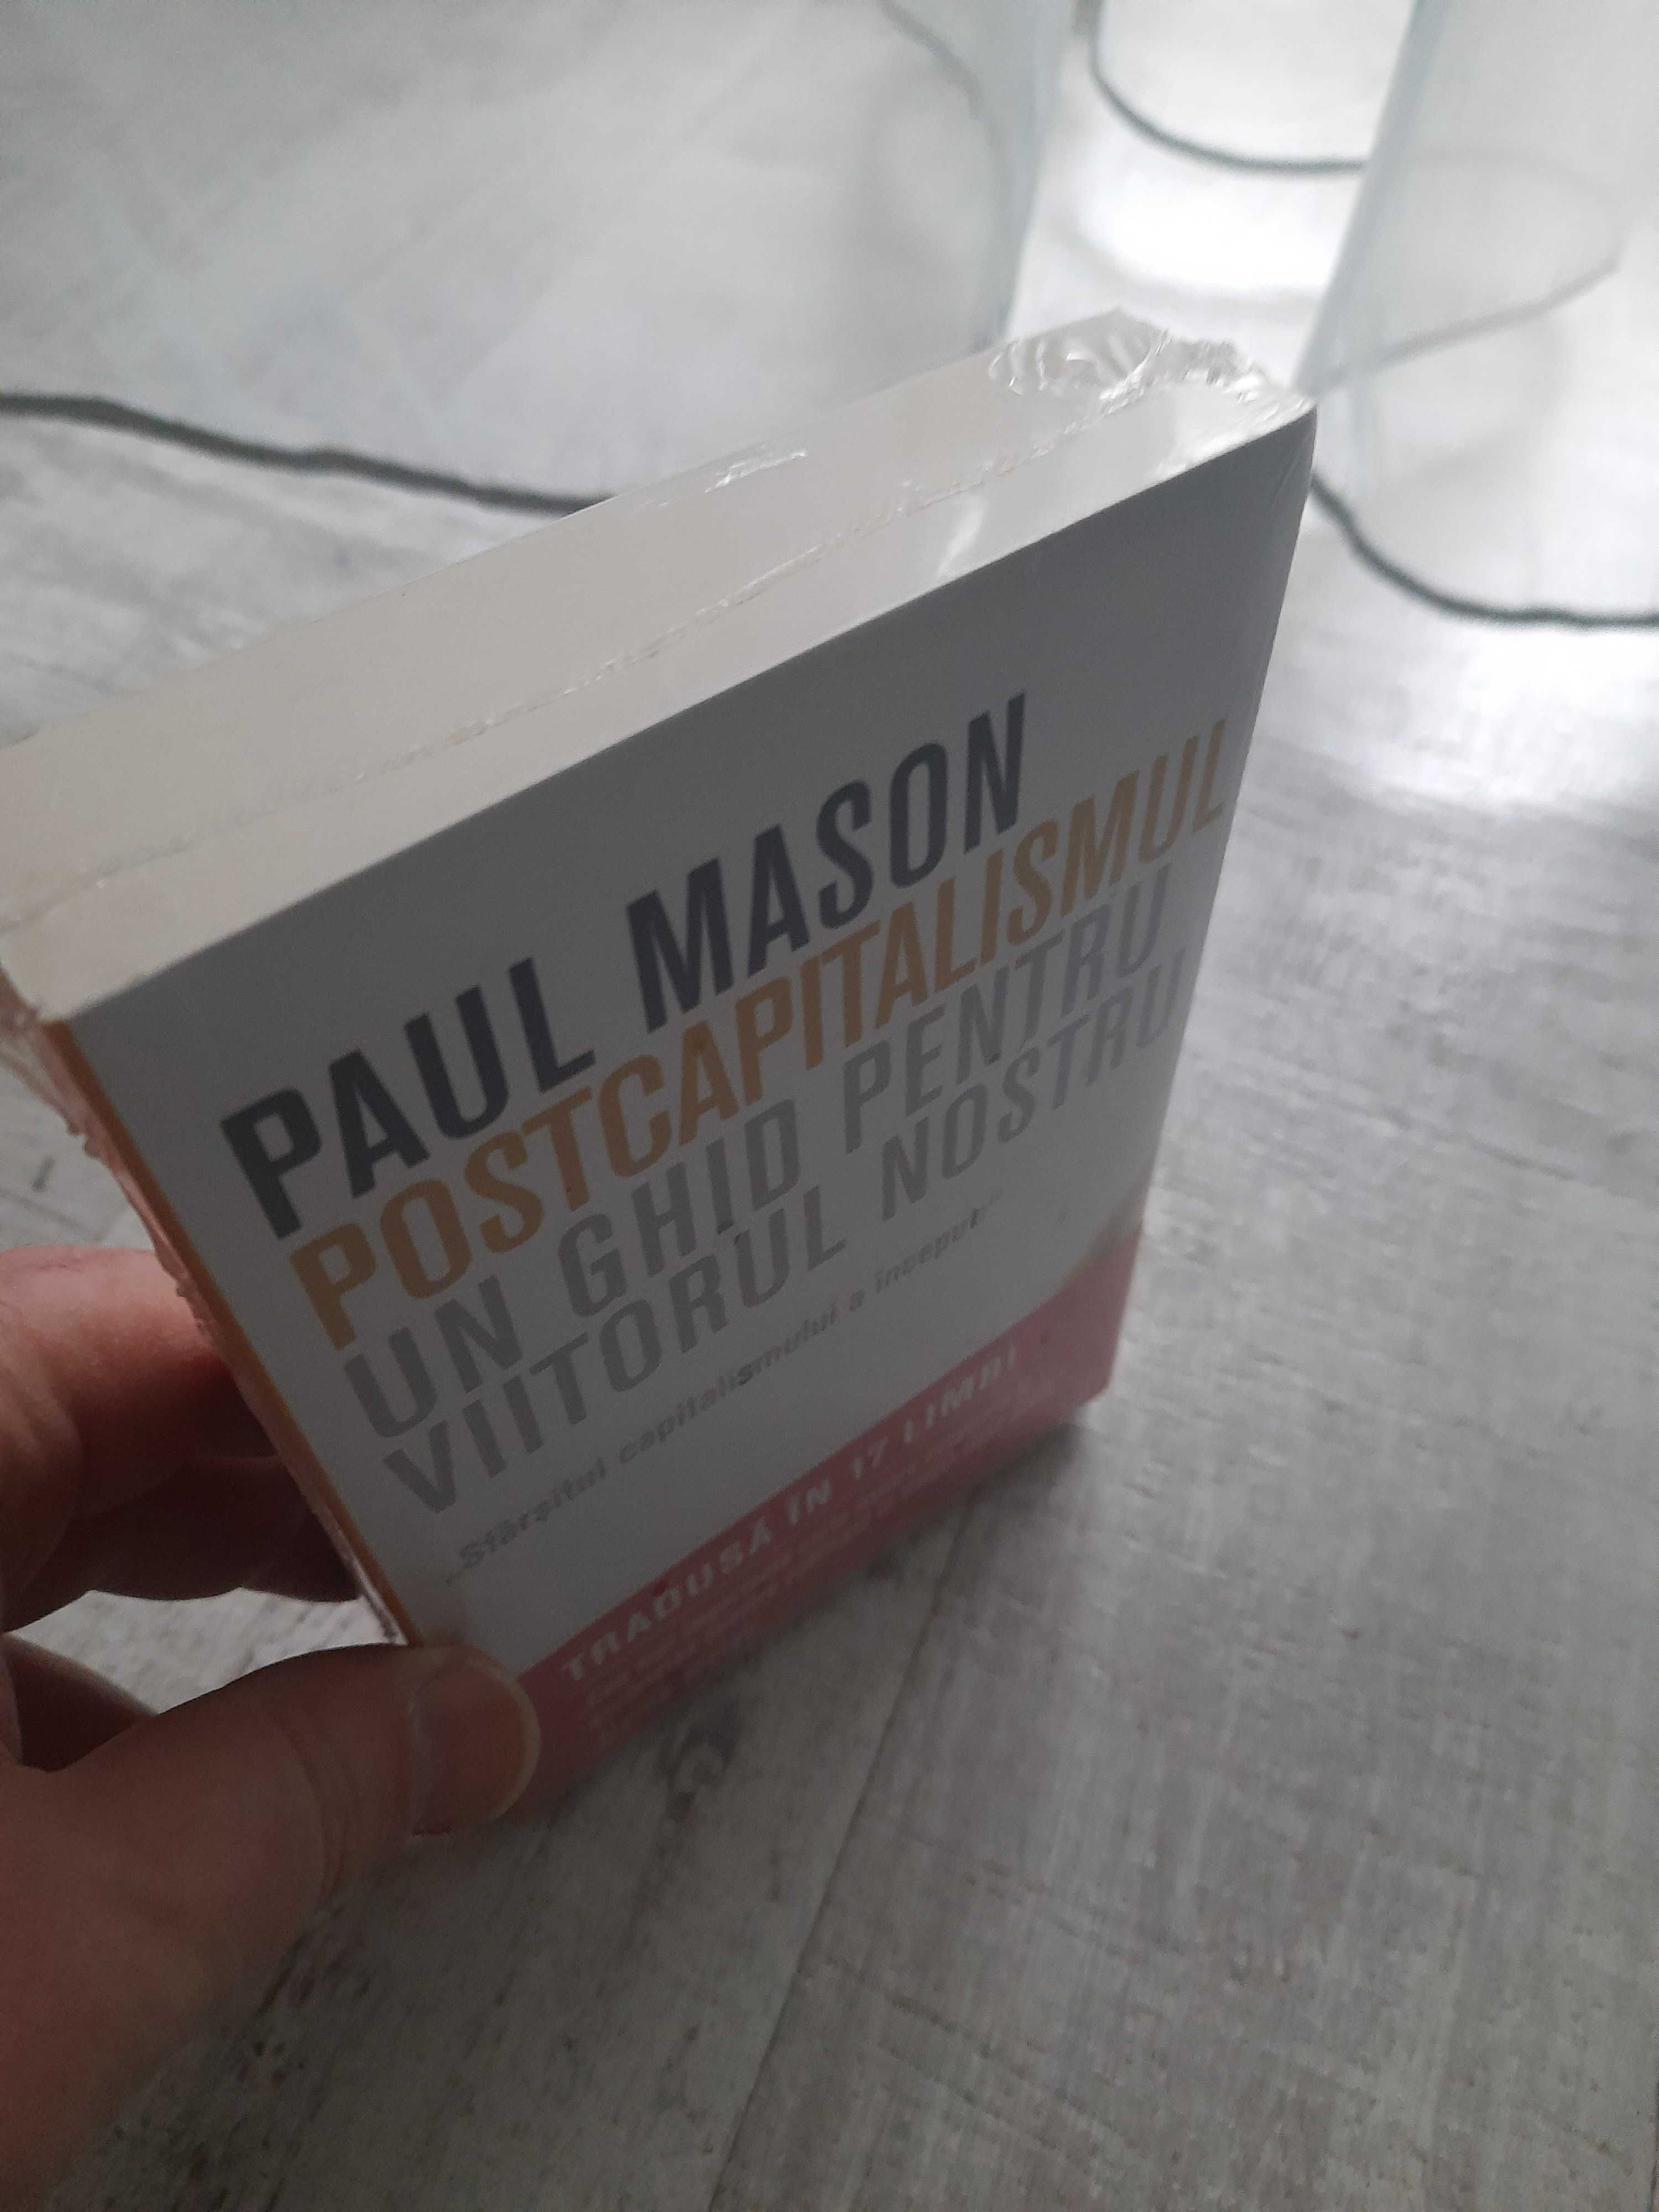 Paul Mason - Postcapitalismul. Un ghid pentru viitorul nostru